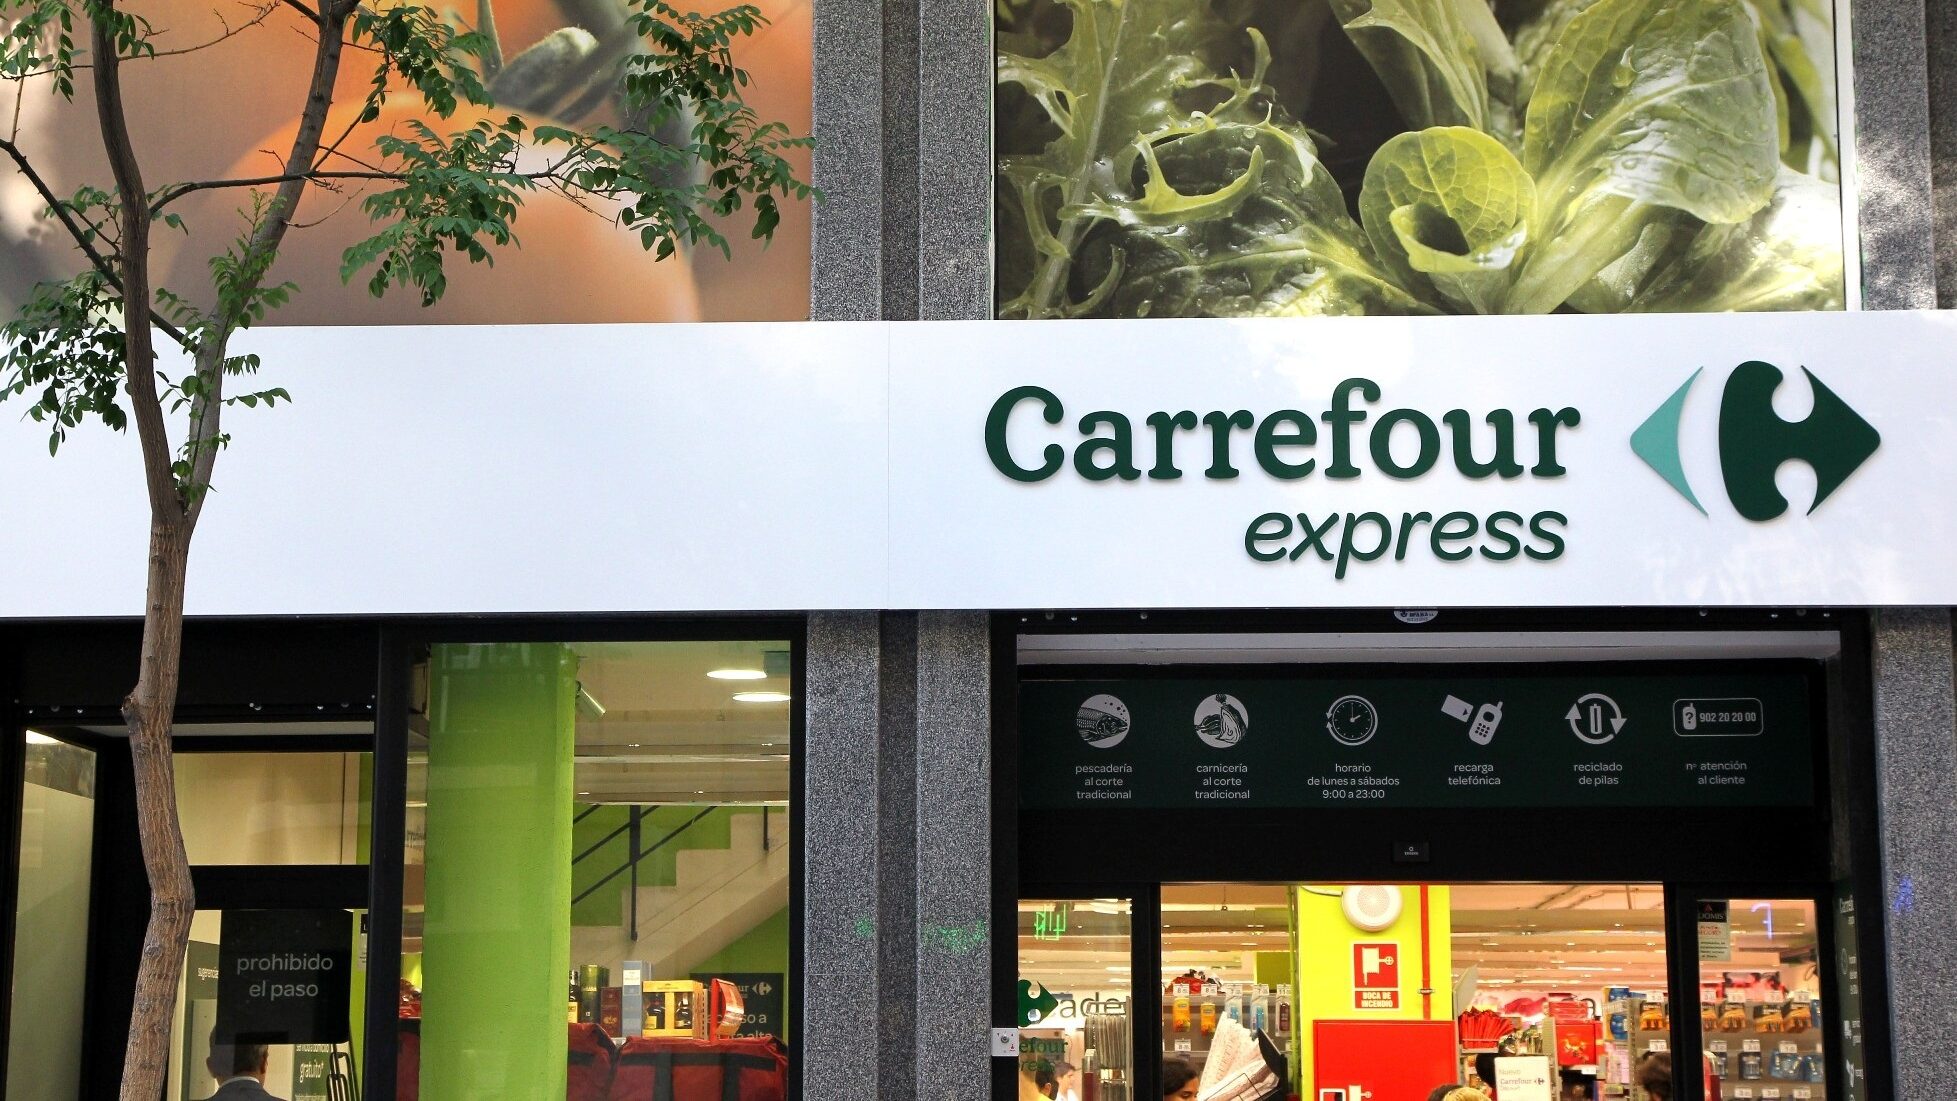 Supermercado Carrefour Express